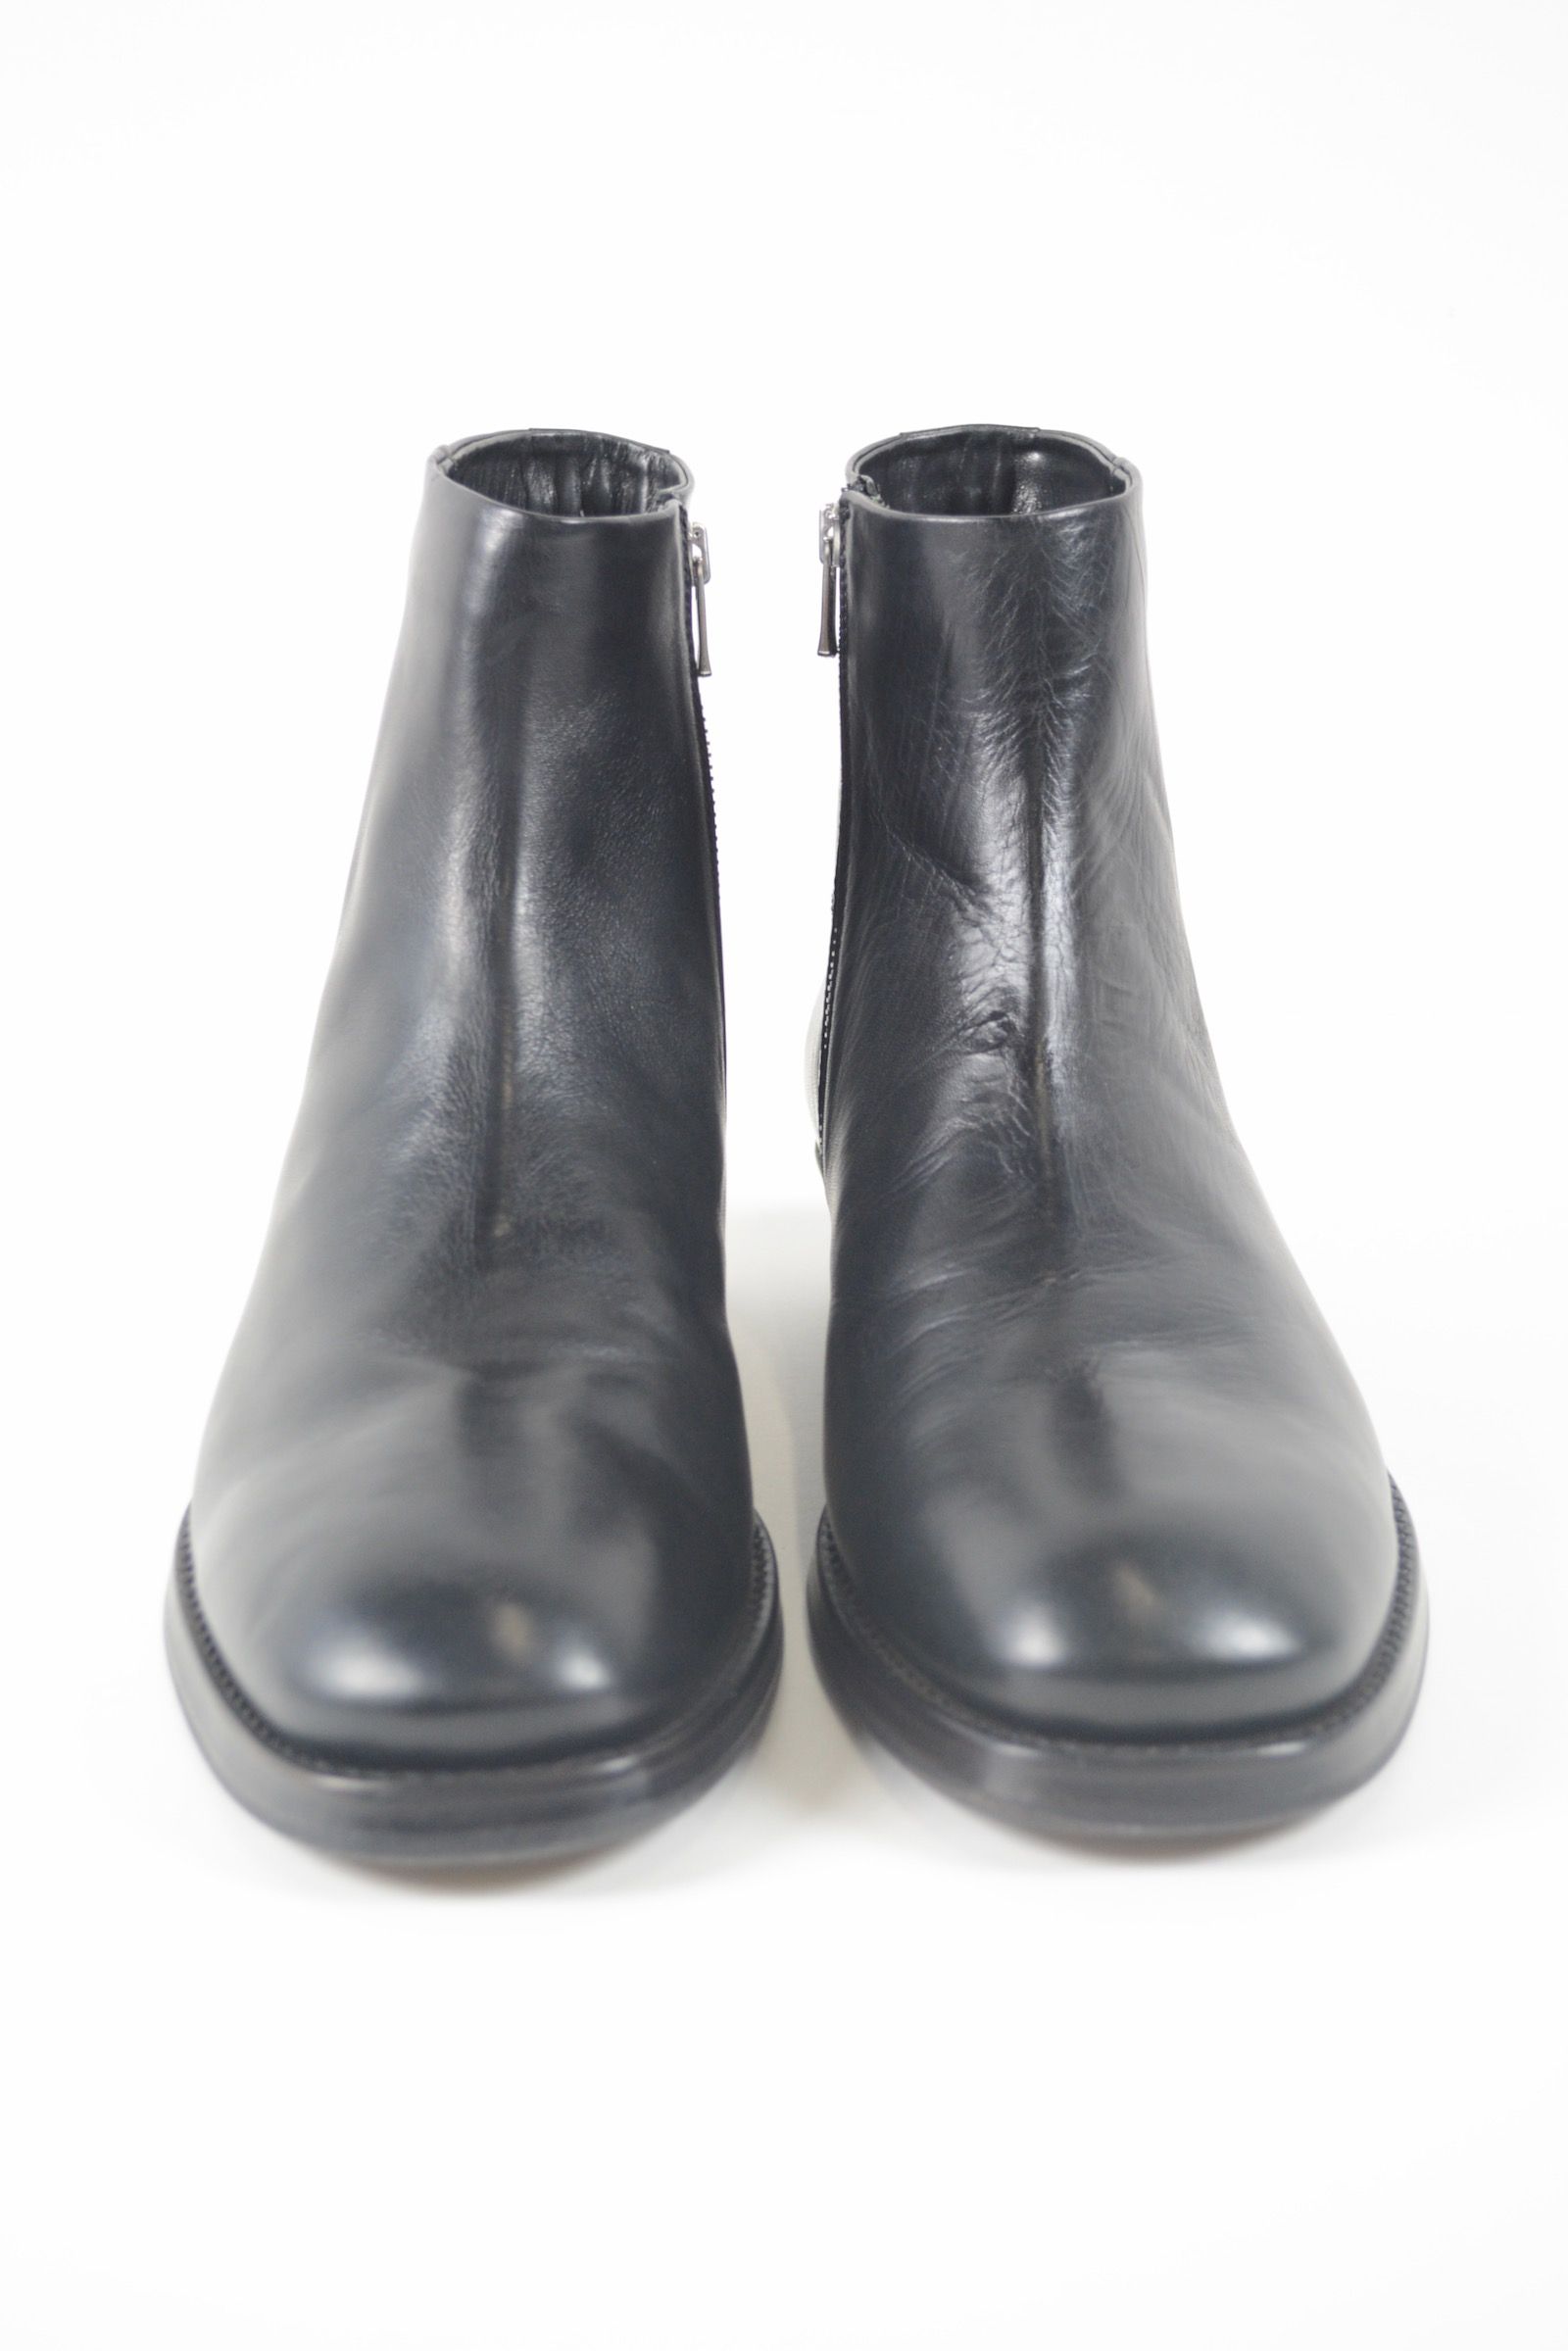 【2022'秋冬新作】Side zip boots / サイドジップブーツ (BLACK) - 41